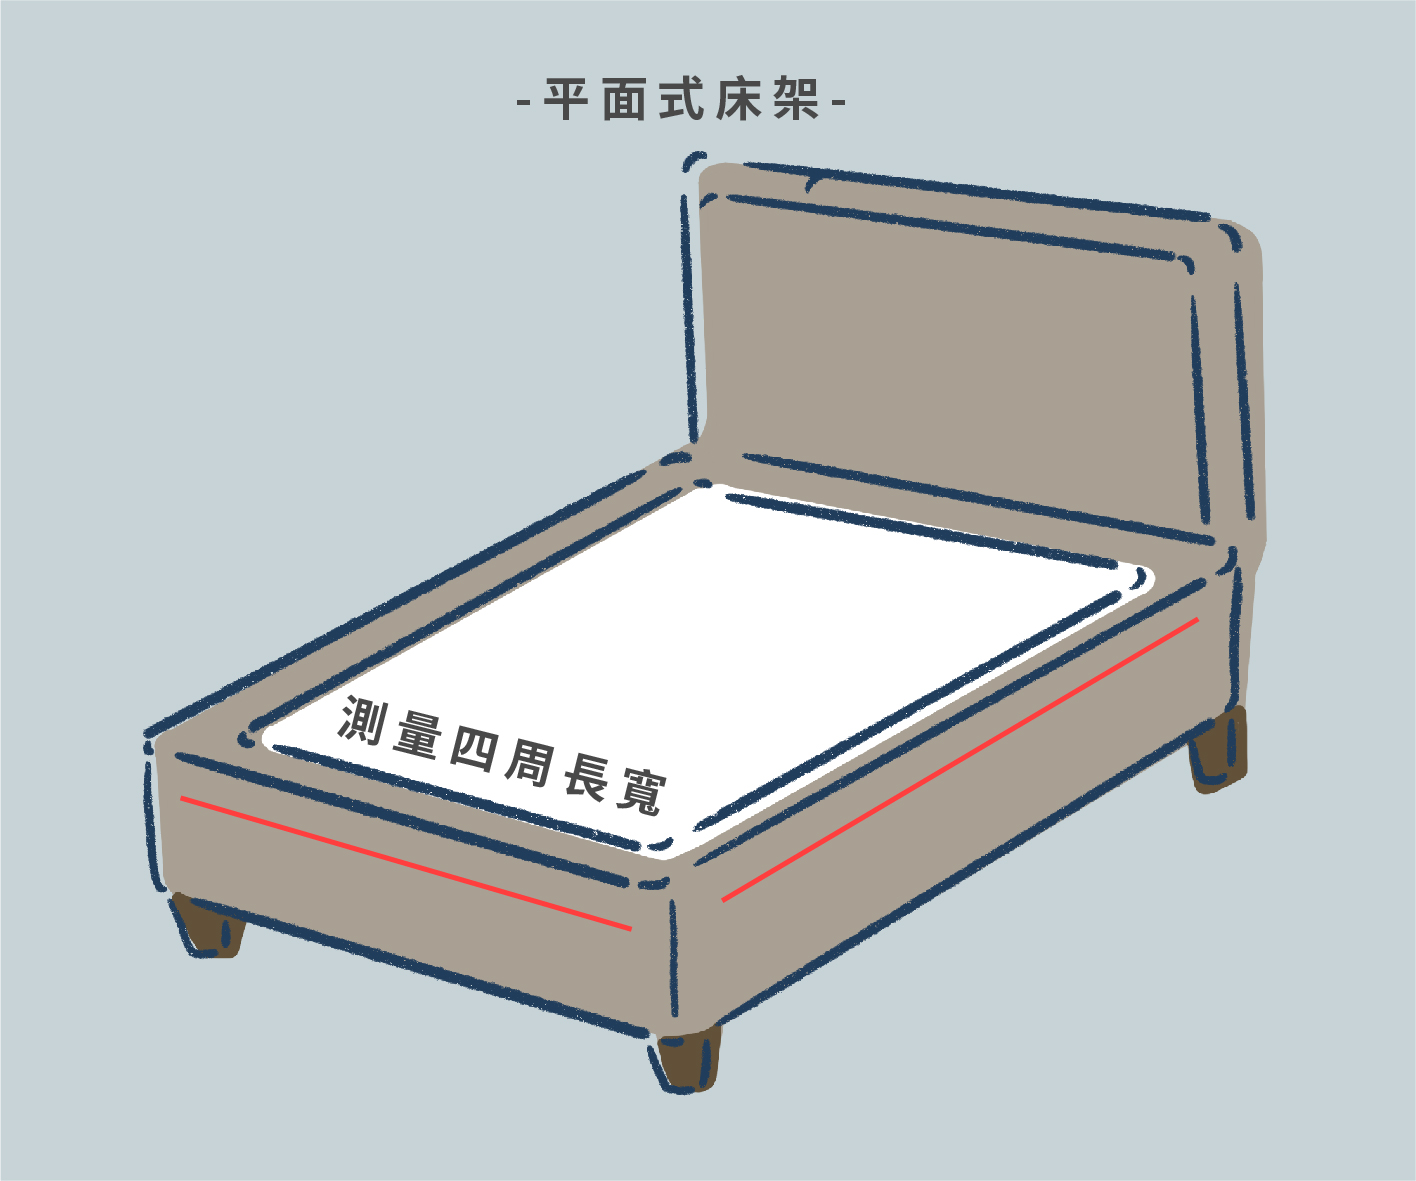 如果是以既有床架來挑選床墊尺寸，記得要先量測床架的尺寸，一般的平面式床架，只要測量四周長寬即可得知合適的床墊尺寸